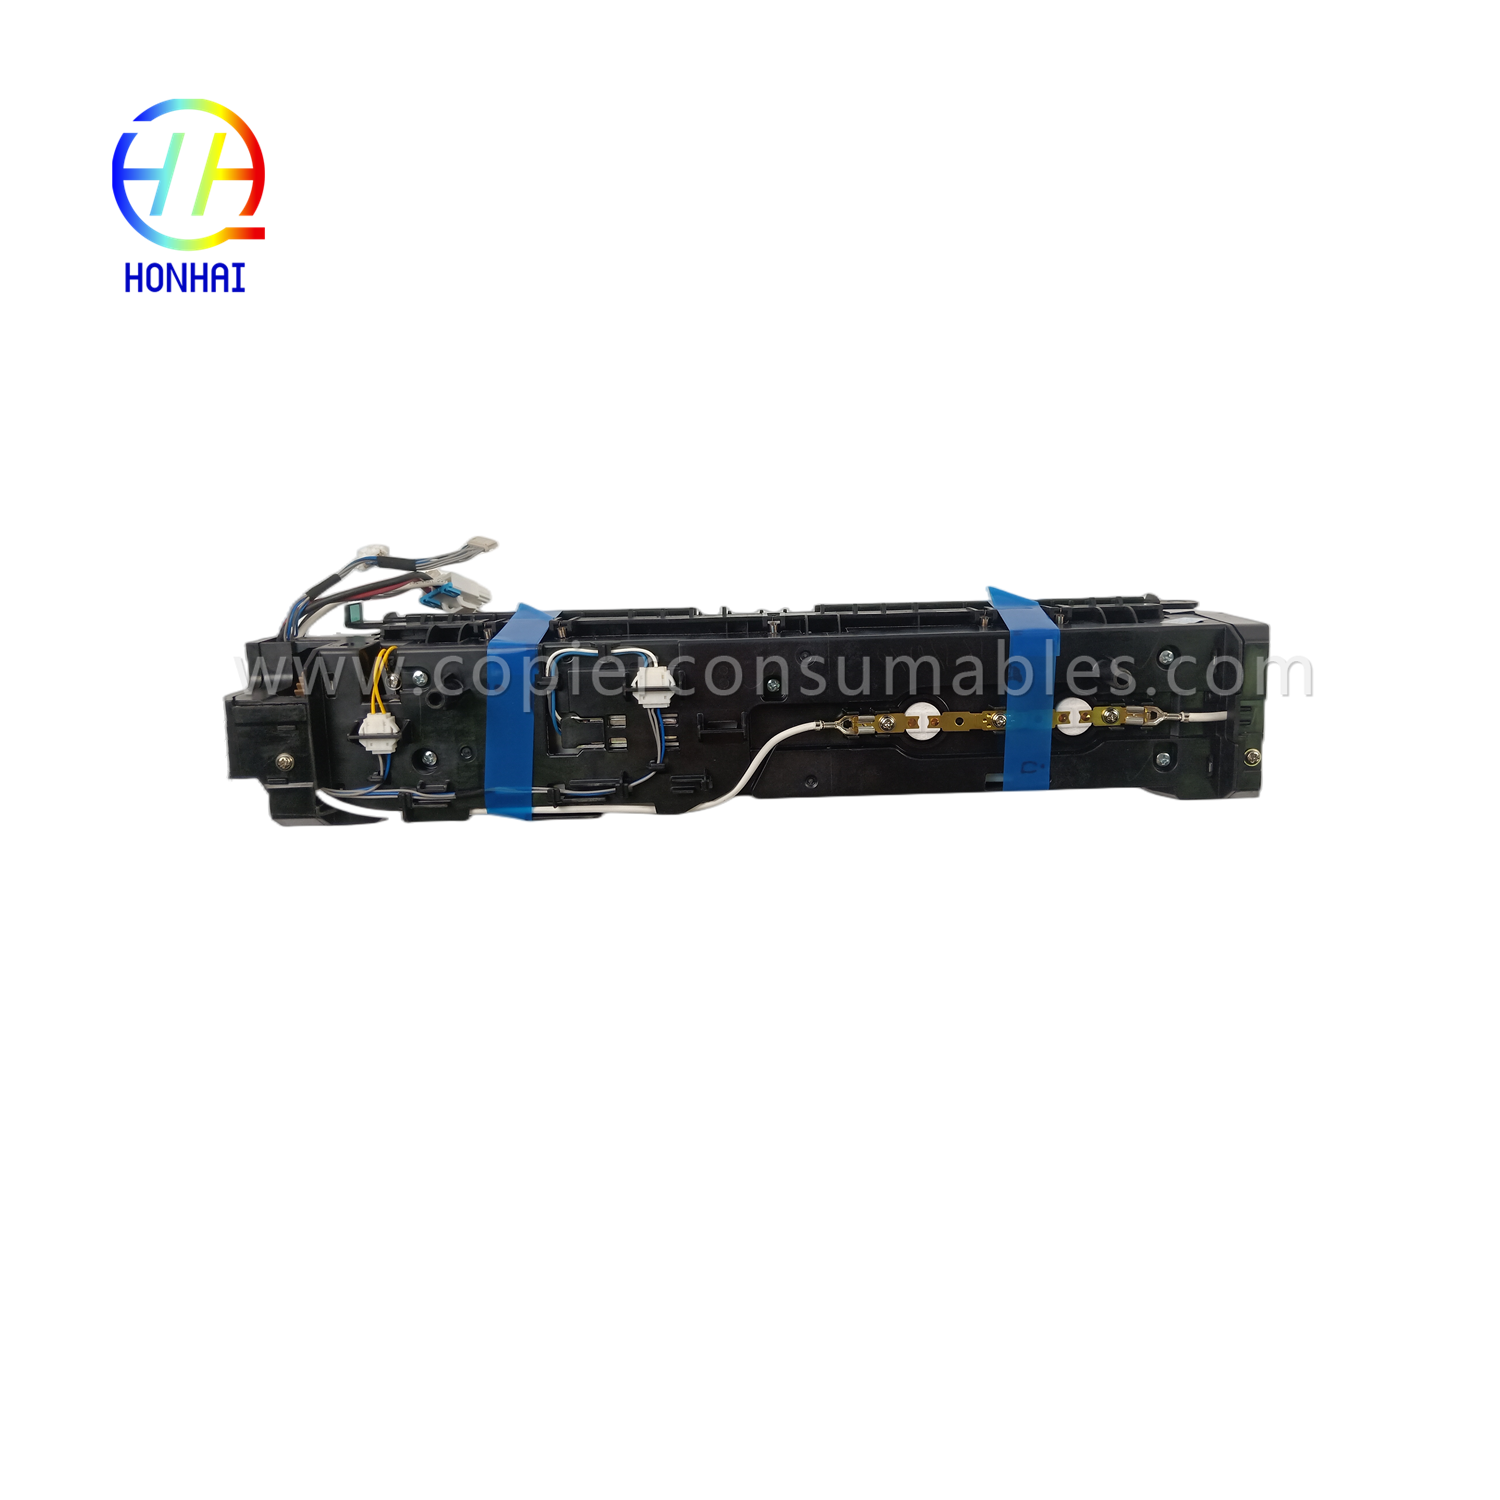 https://www.copierconsumables.com/fuser-unit-for-samsung-jc91-01211a-jc9101211a-sl-k3300-3250-fuser-assemblies-product/